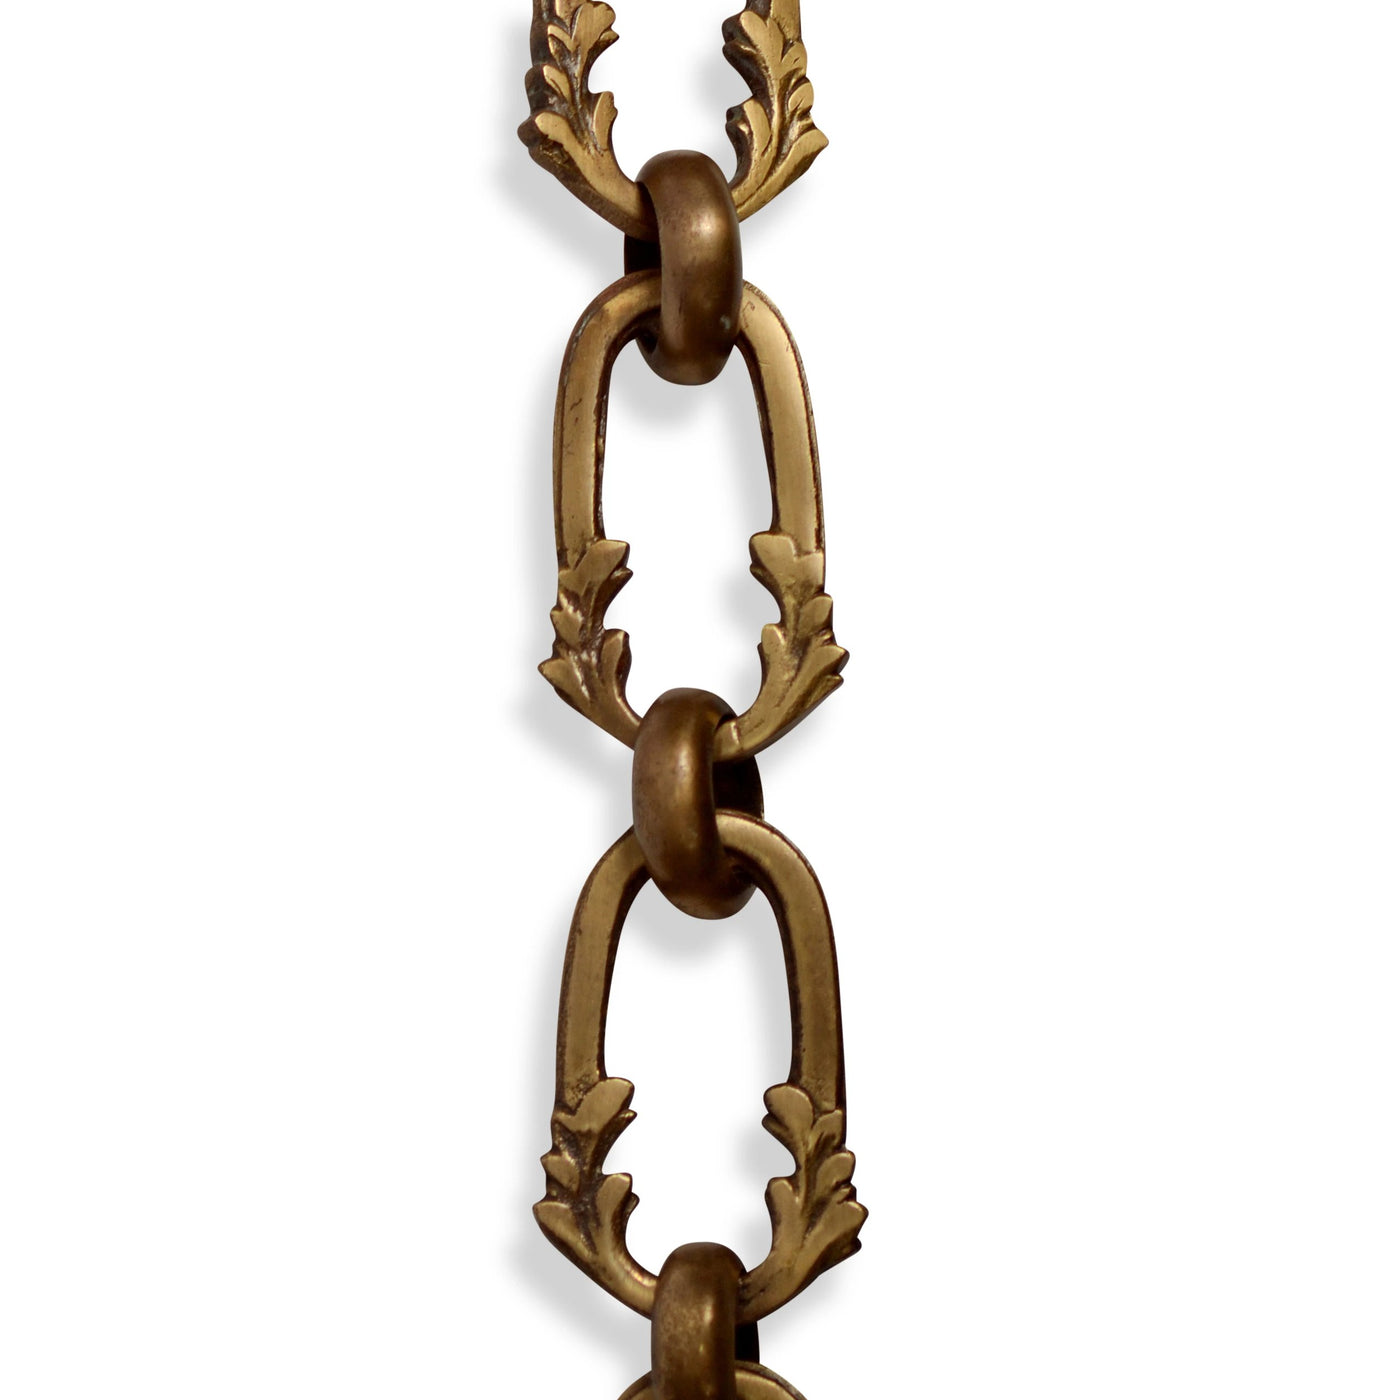 1-1/4in Diameter Round Link Brass Chain - Unfinished Brass